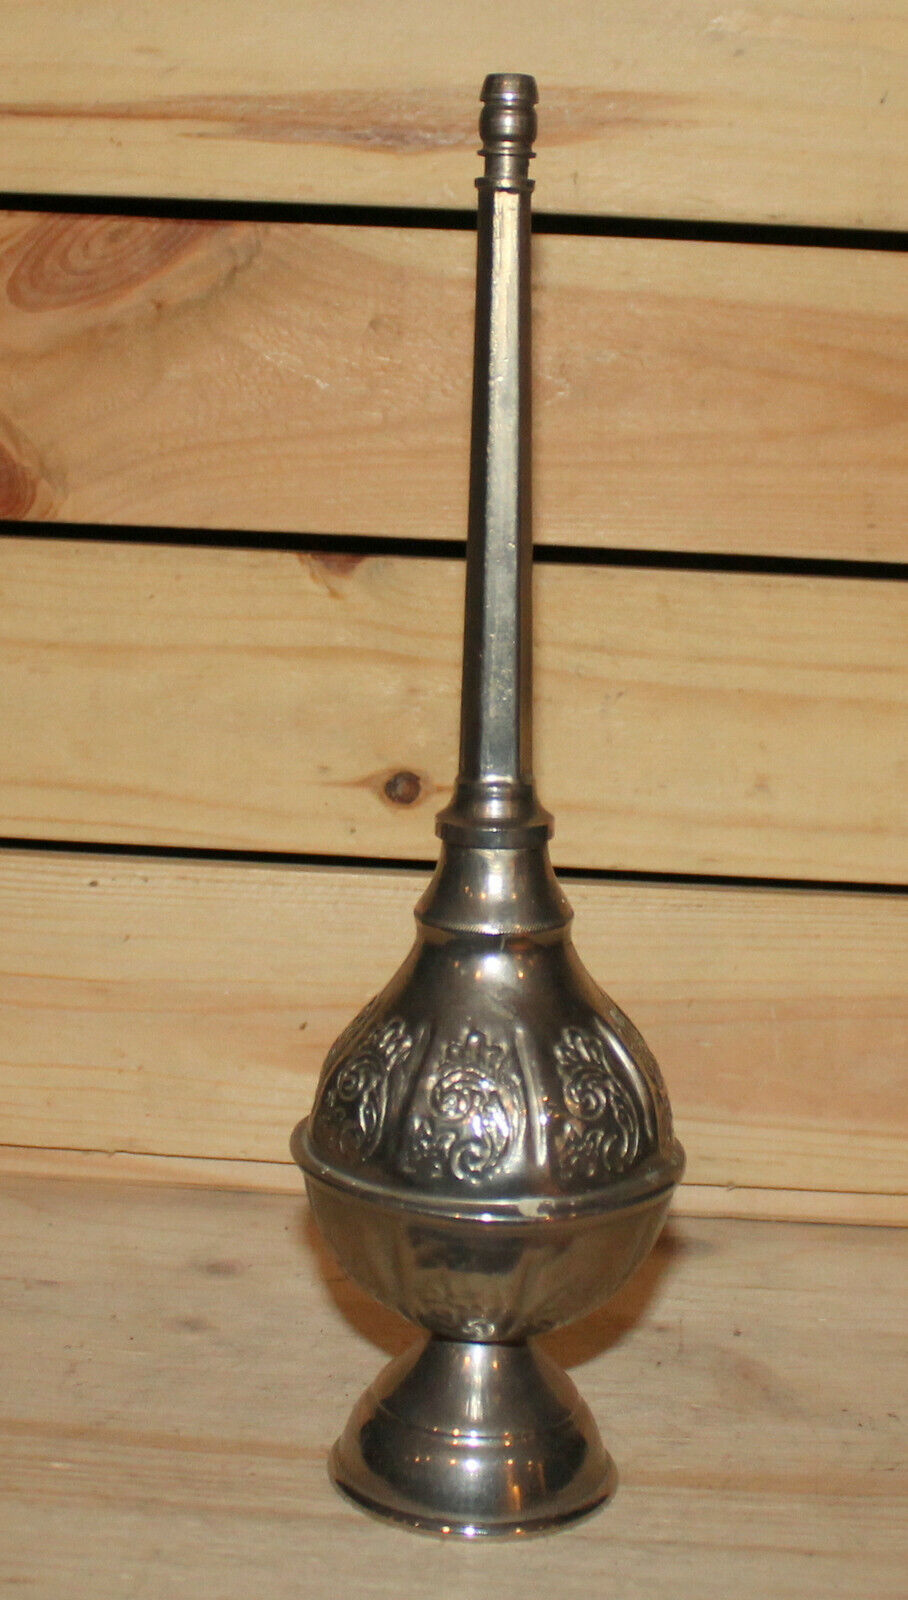 Vintage Islamic ornate metal perfume bottle